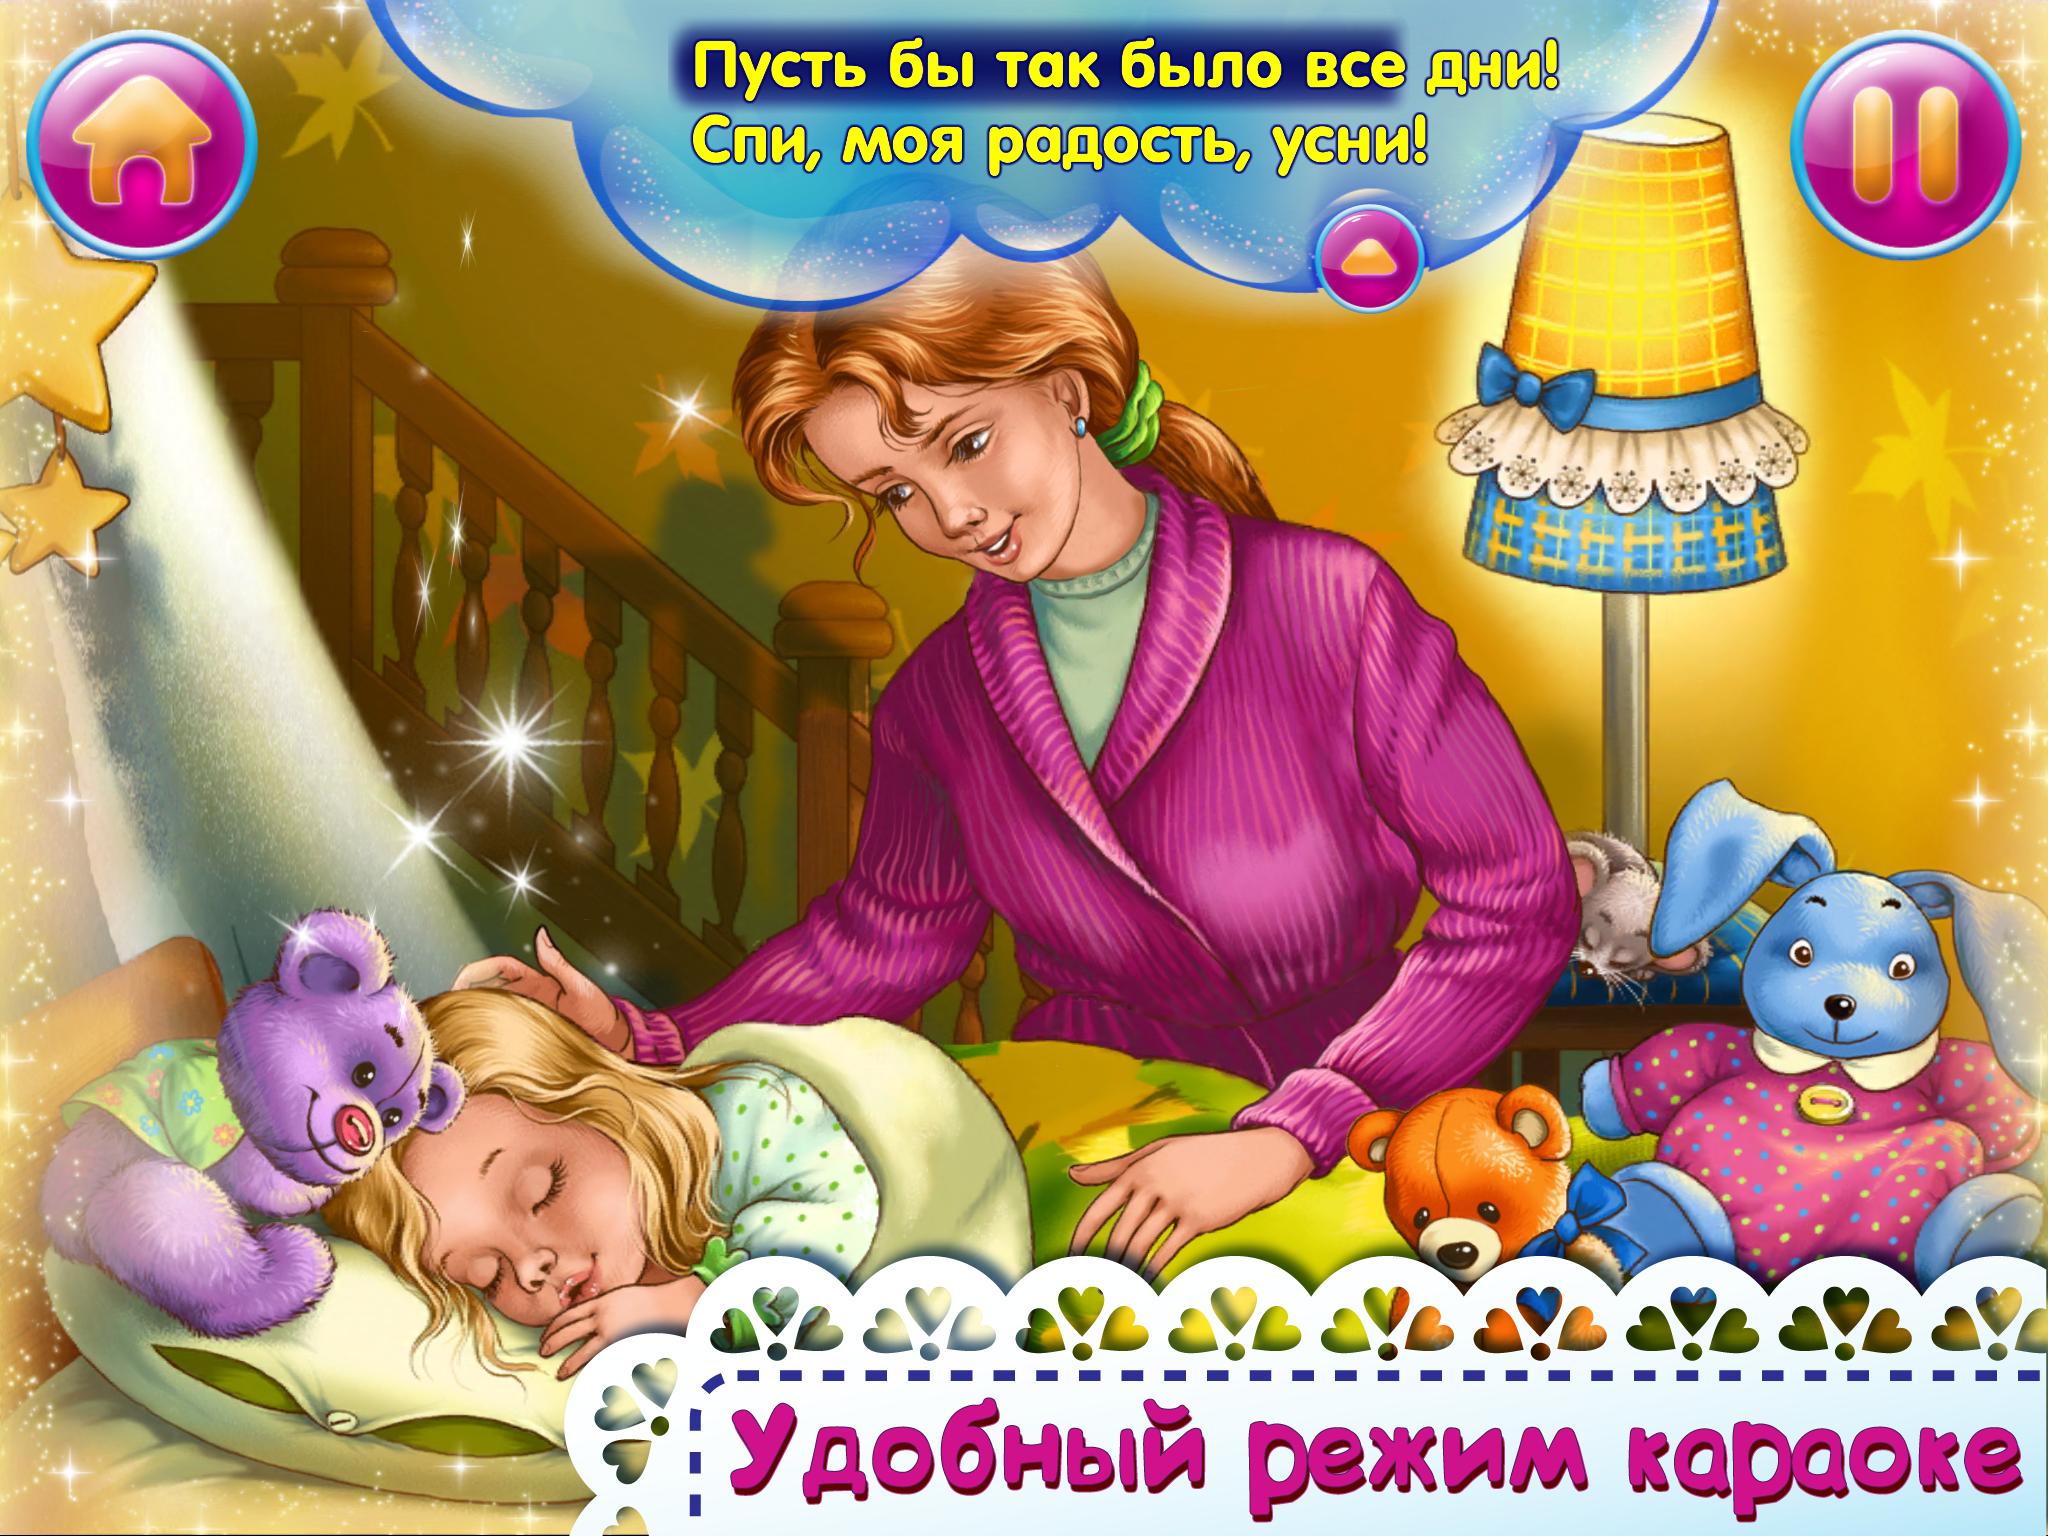 Слова колыбельной спи моя. Колыбельные для малышей. Иллюстрация к колыбельной. Колыбельная для малышей спи моя радость. Колыбельная картинки для детей.